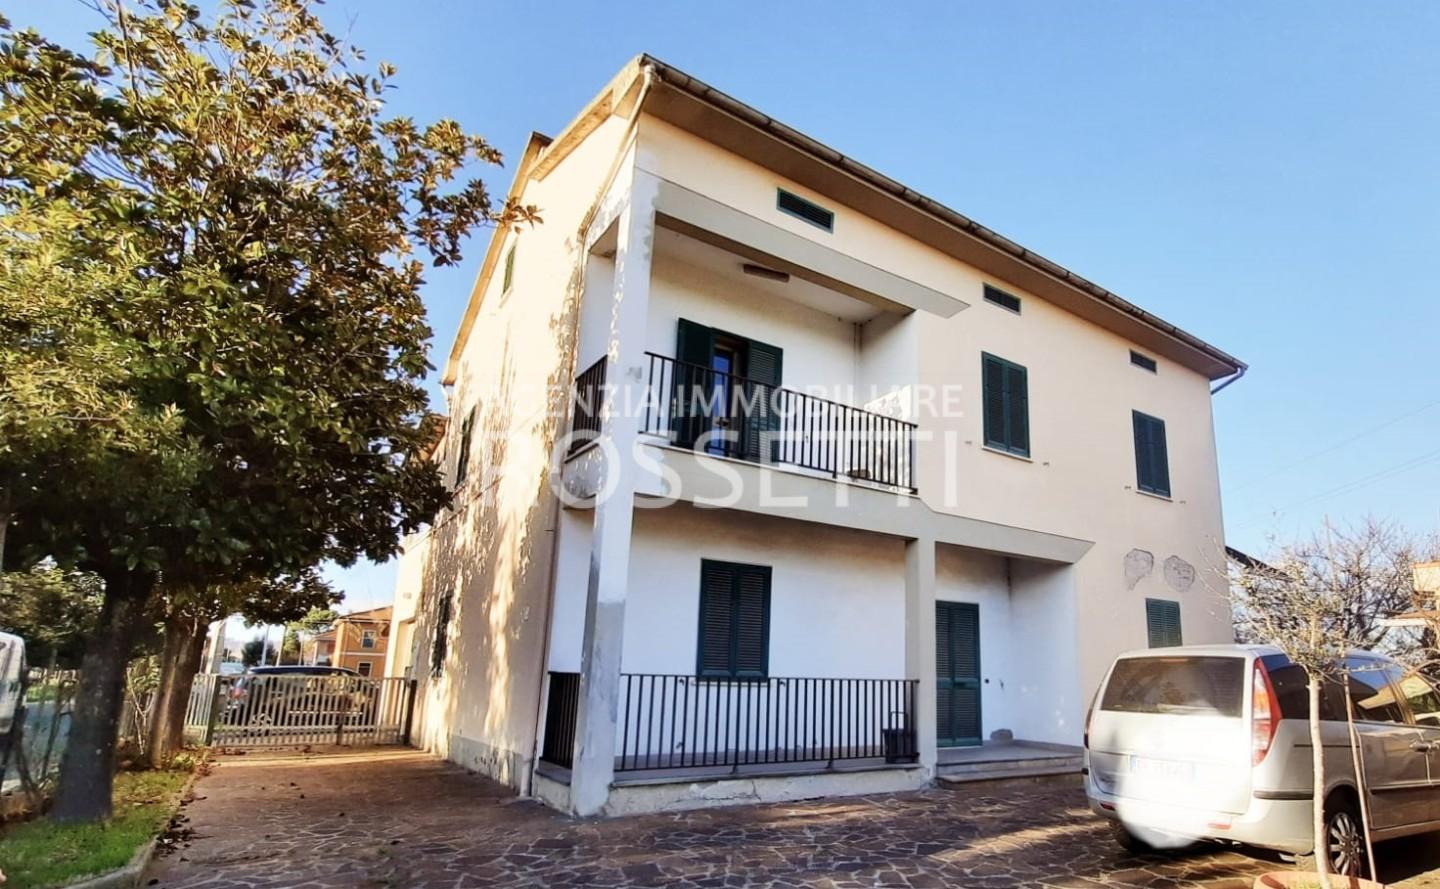 Soluzione Indipendente in vendita a Santa Croce sull'Arno, 10 locali, prezzo € 255.000 | PortaleAgenzieImmobiliari.it